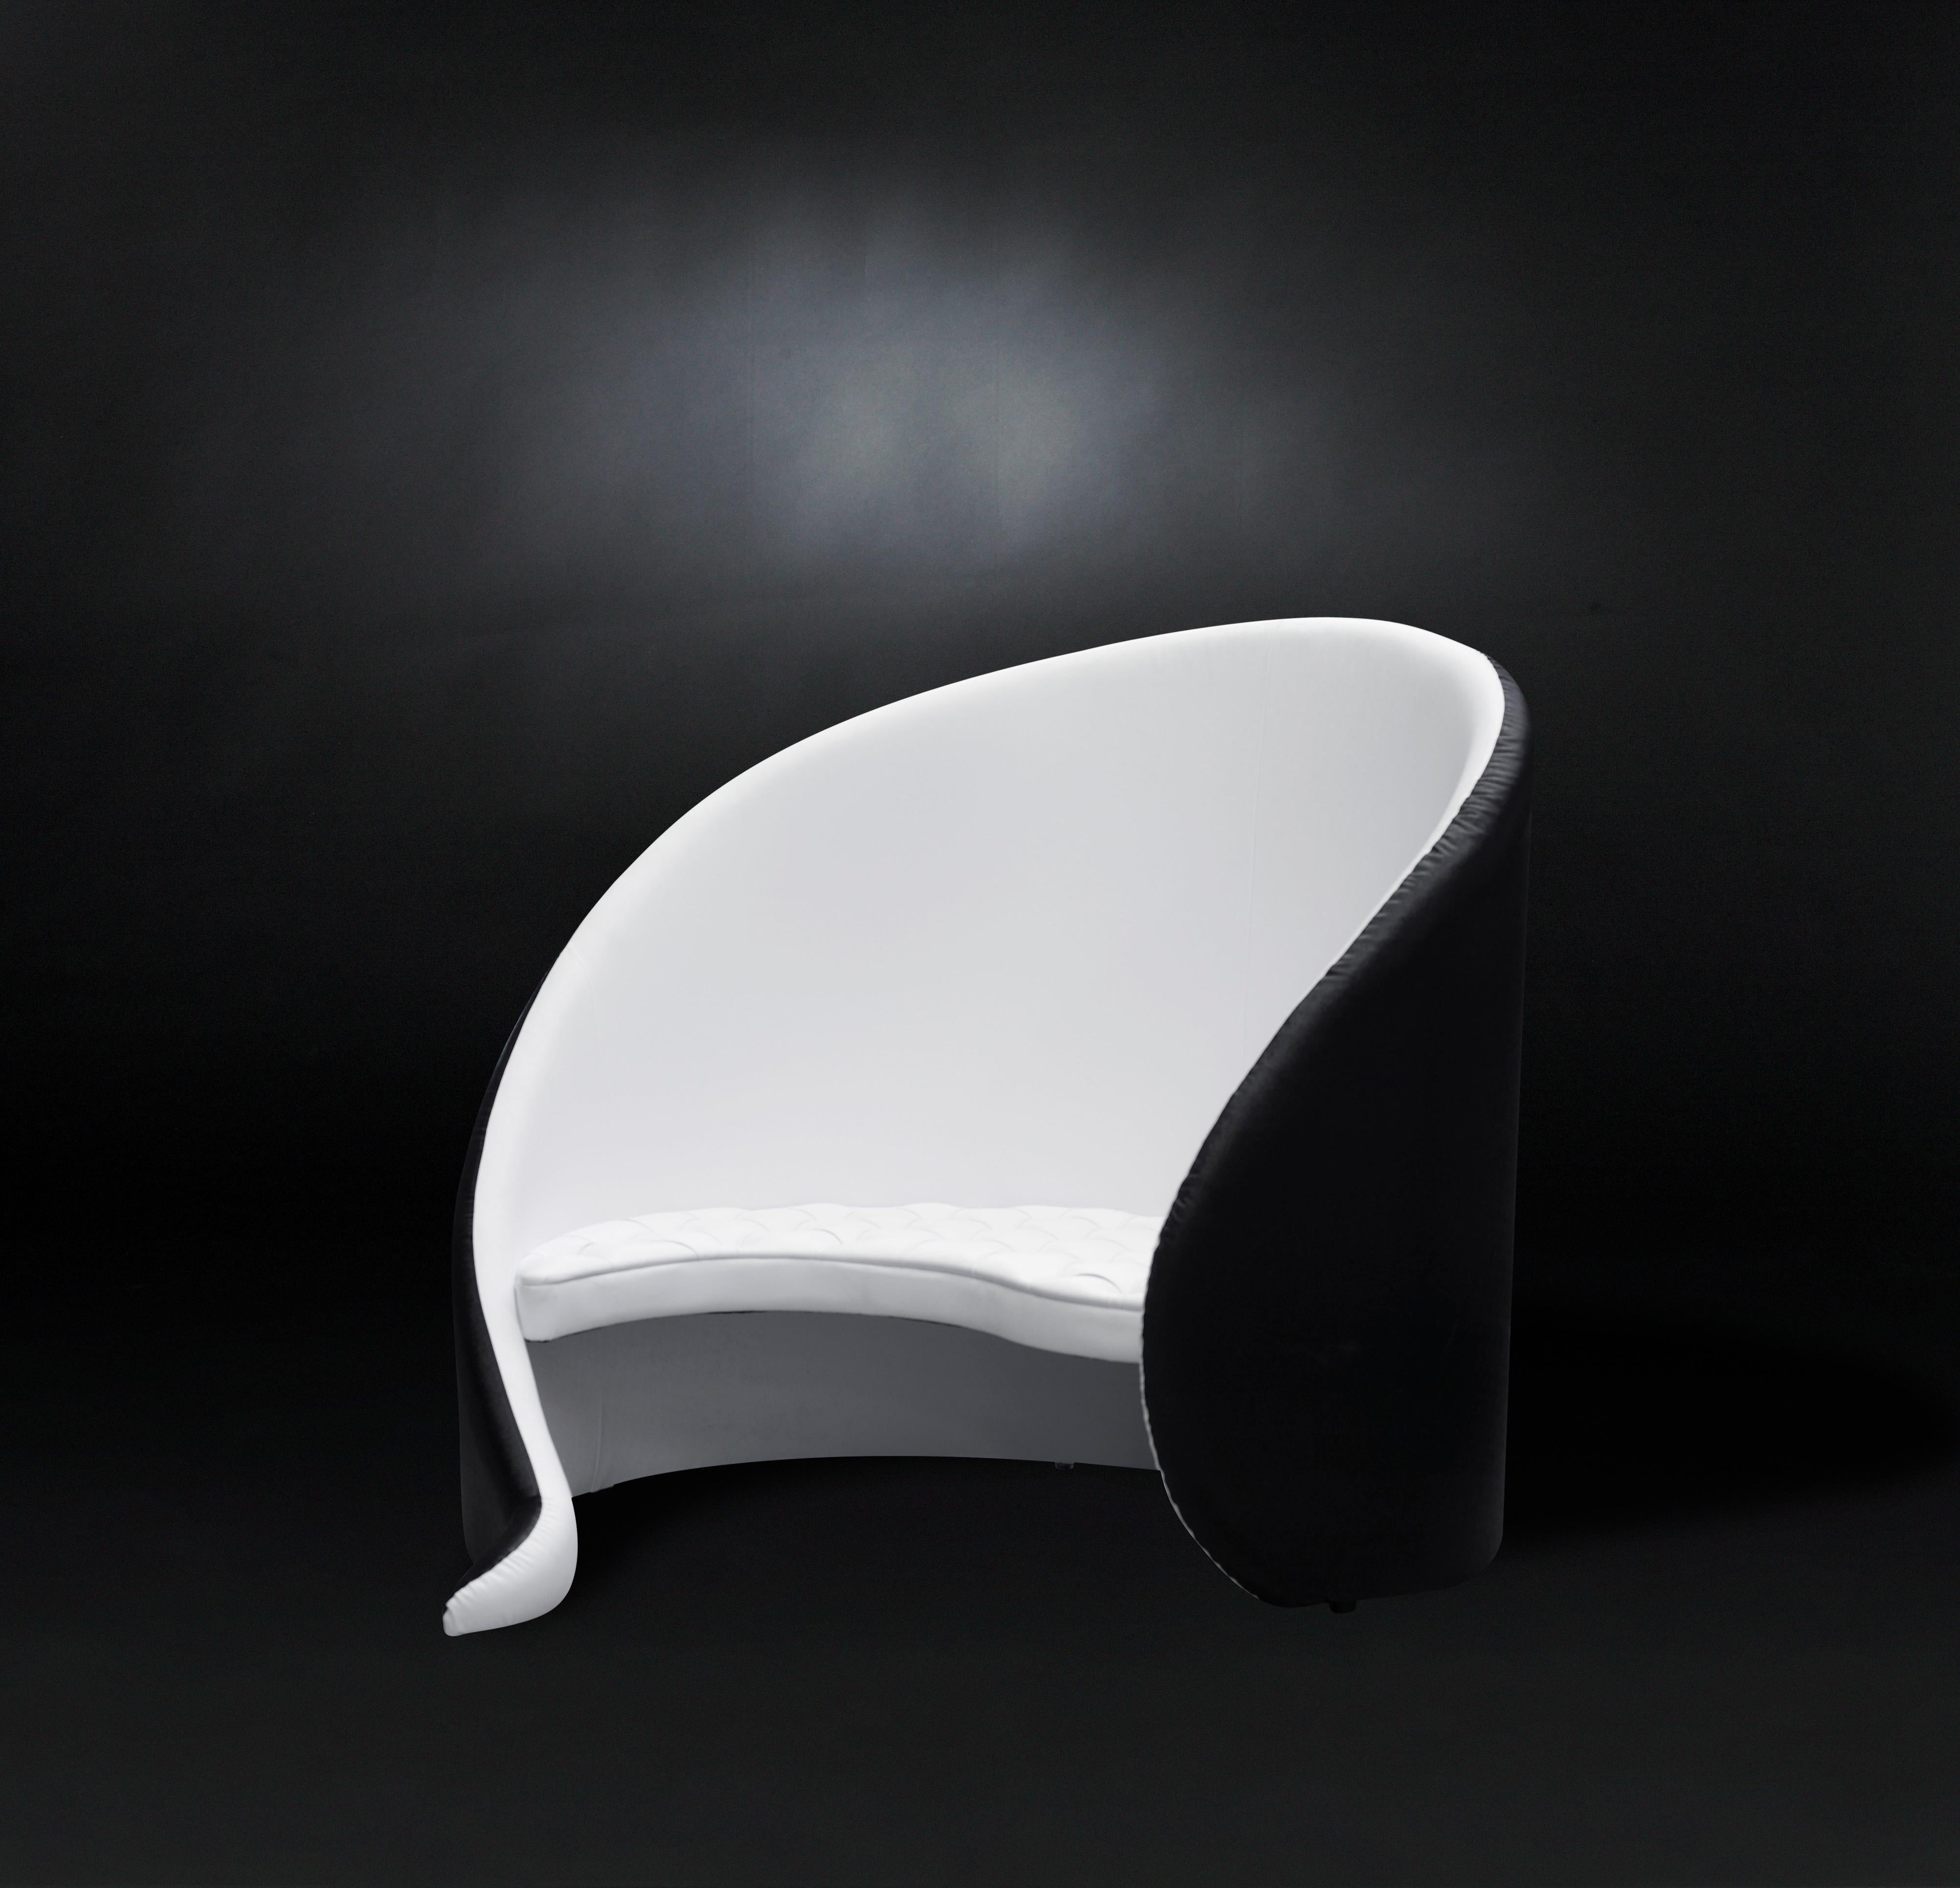 Les meubles VG représentent le luxe en termes d'exclusivité, de distinction et de haute qualité. Elles sont le fruit d'un design sophistiqué et exclusif à forte identité et sont le résultat d'une attention méticuleuse portée aux détails typiques des